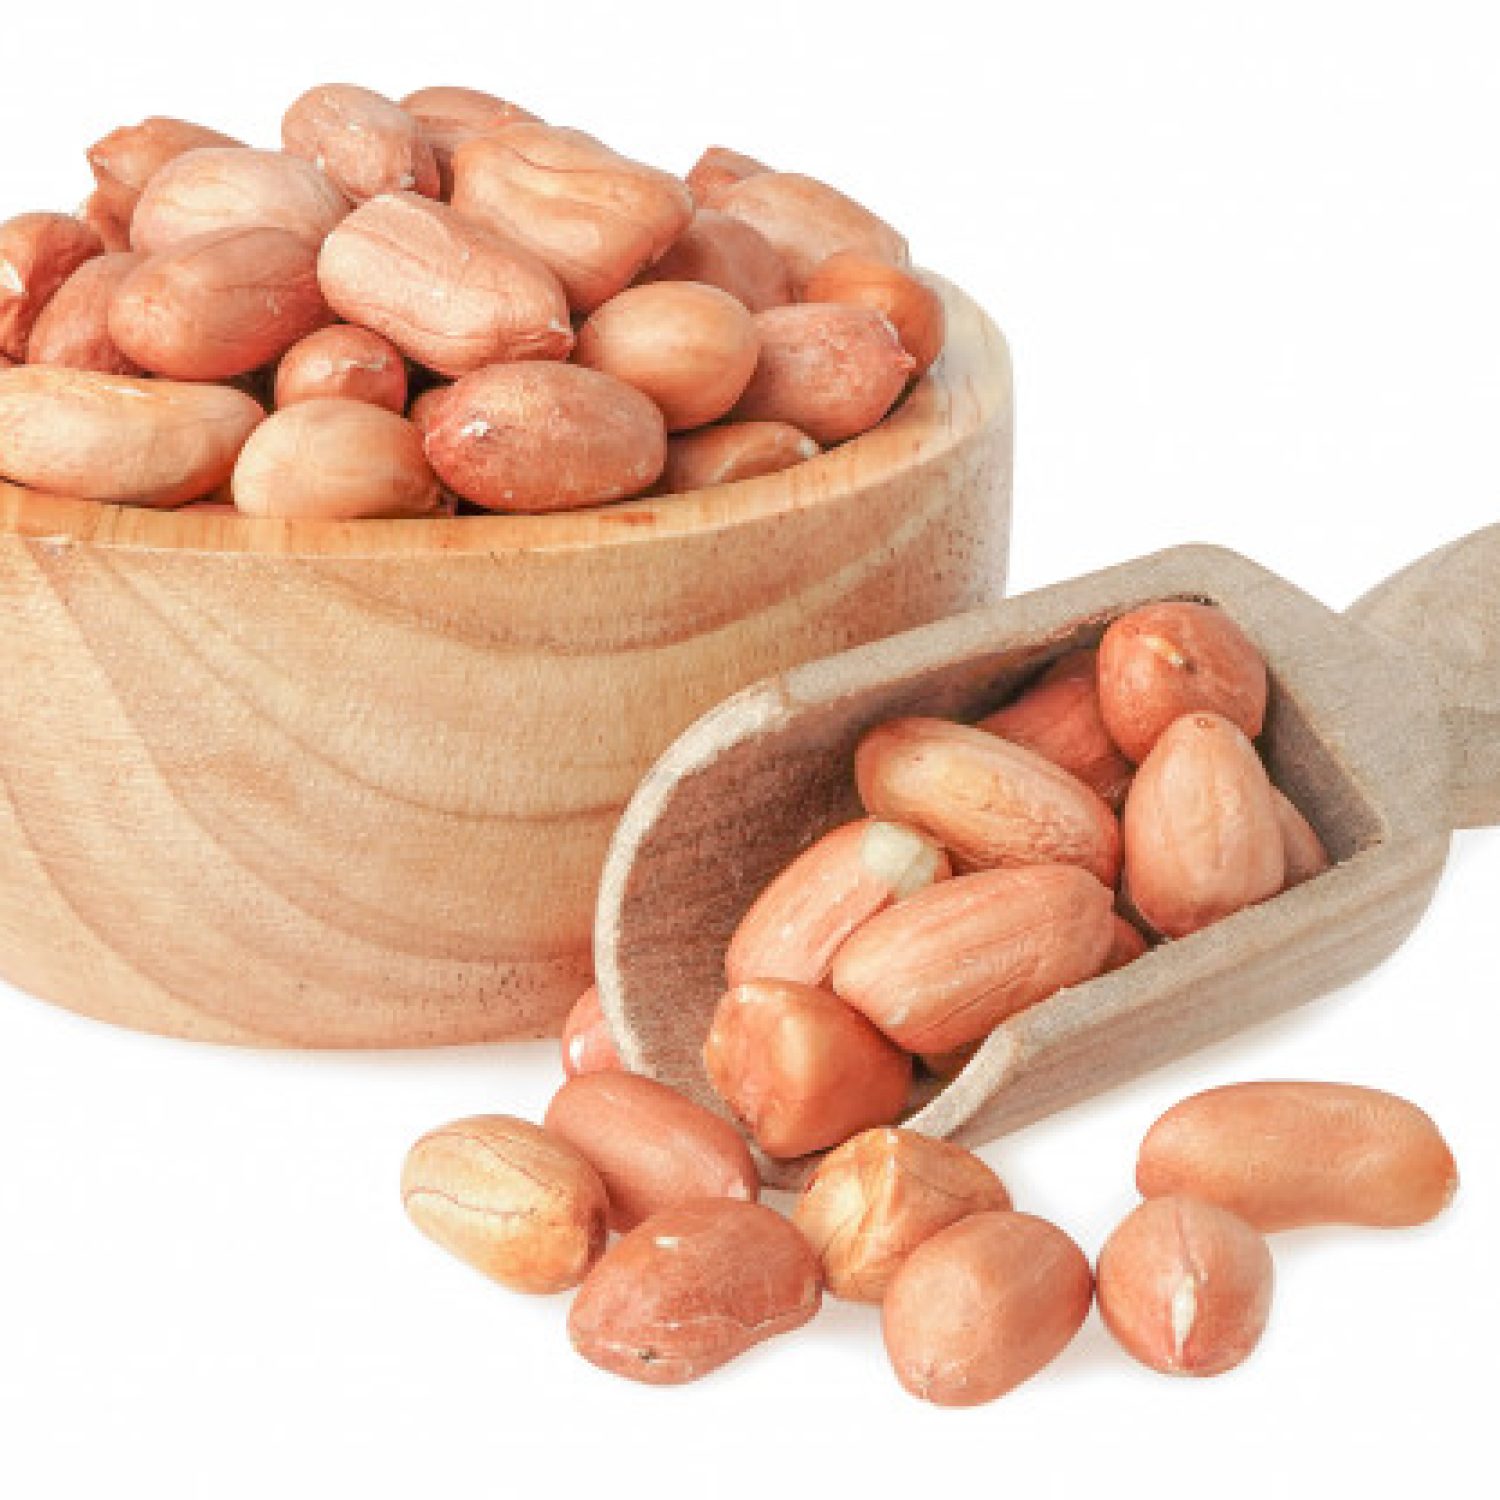 Manfaat kacang tanah untuk kesehatan